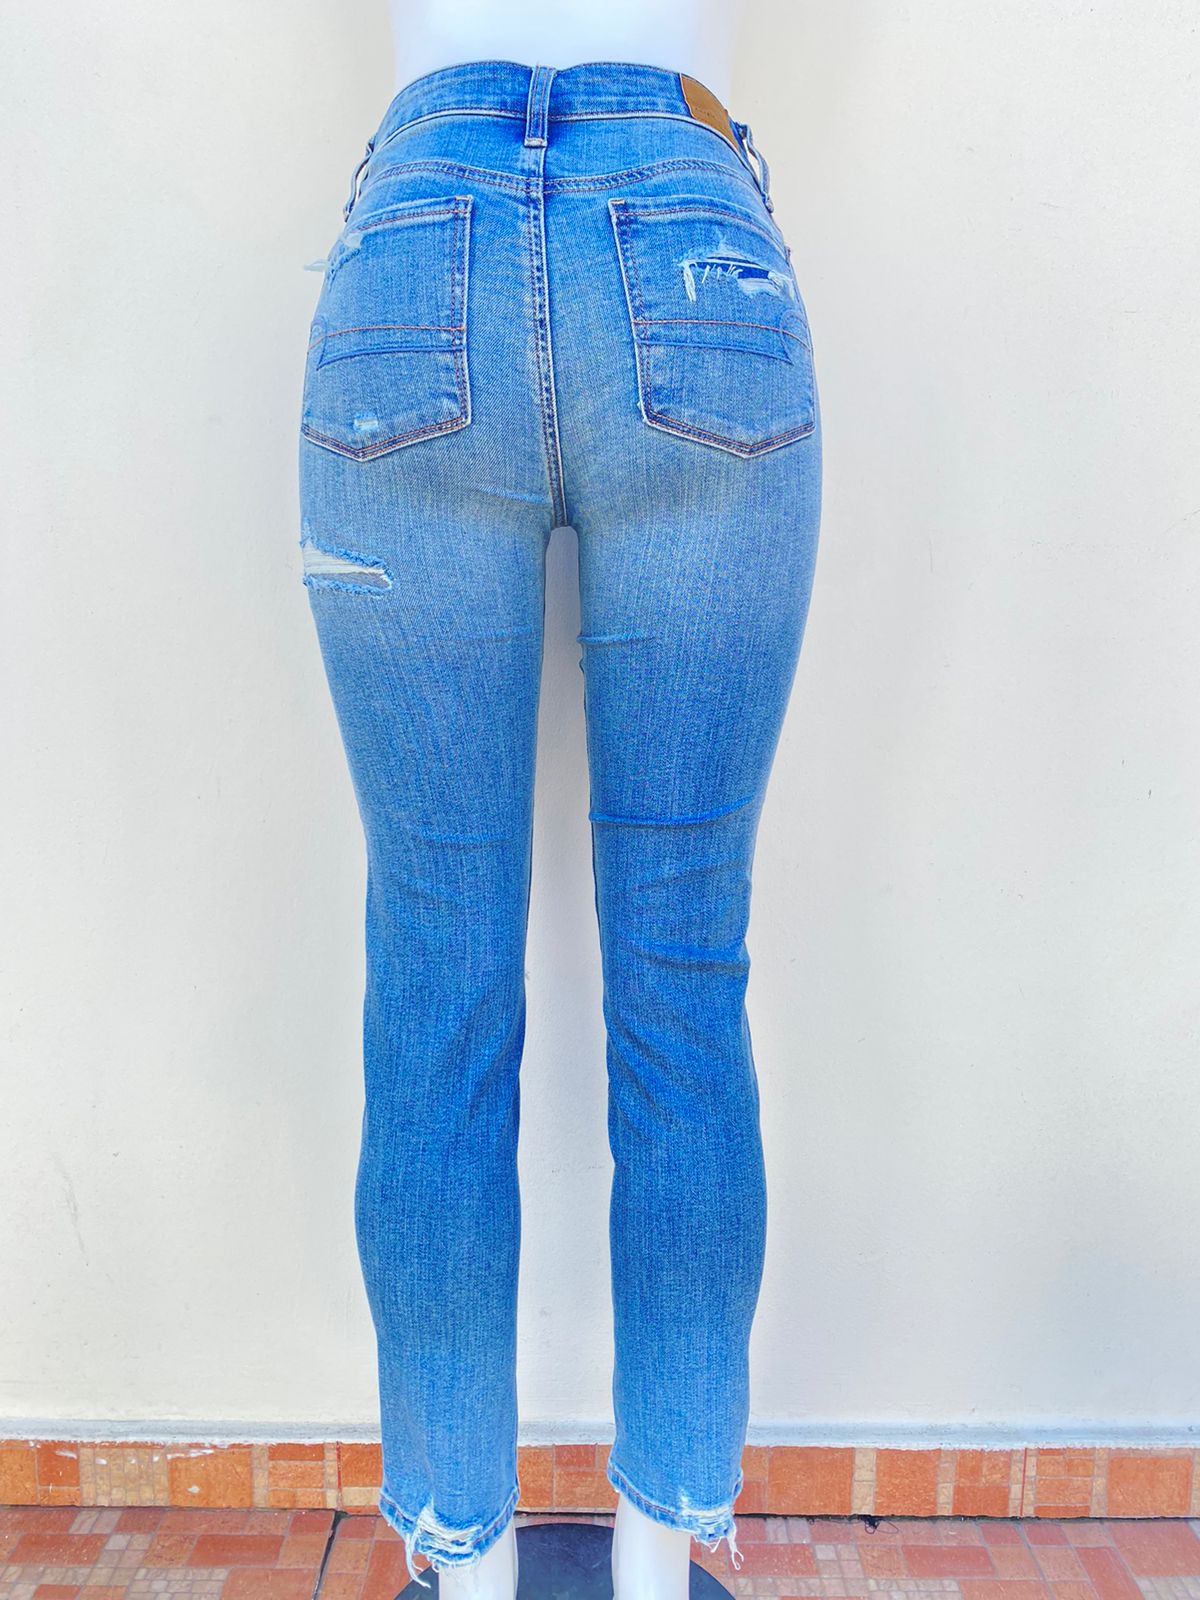 Pantalón Jean American Eagle original azul claro con rasgados tapados.